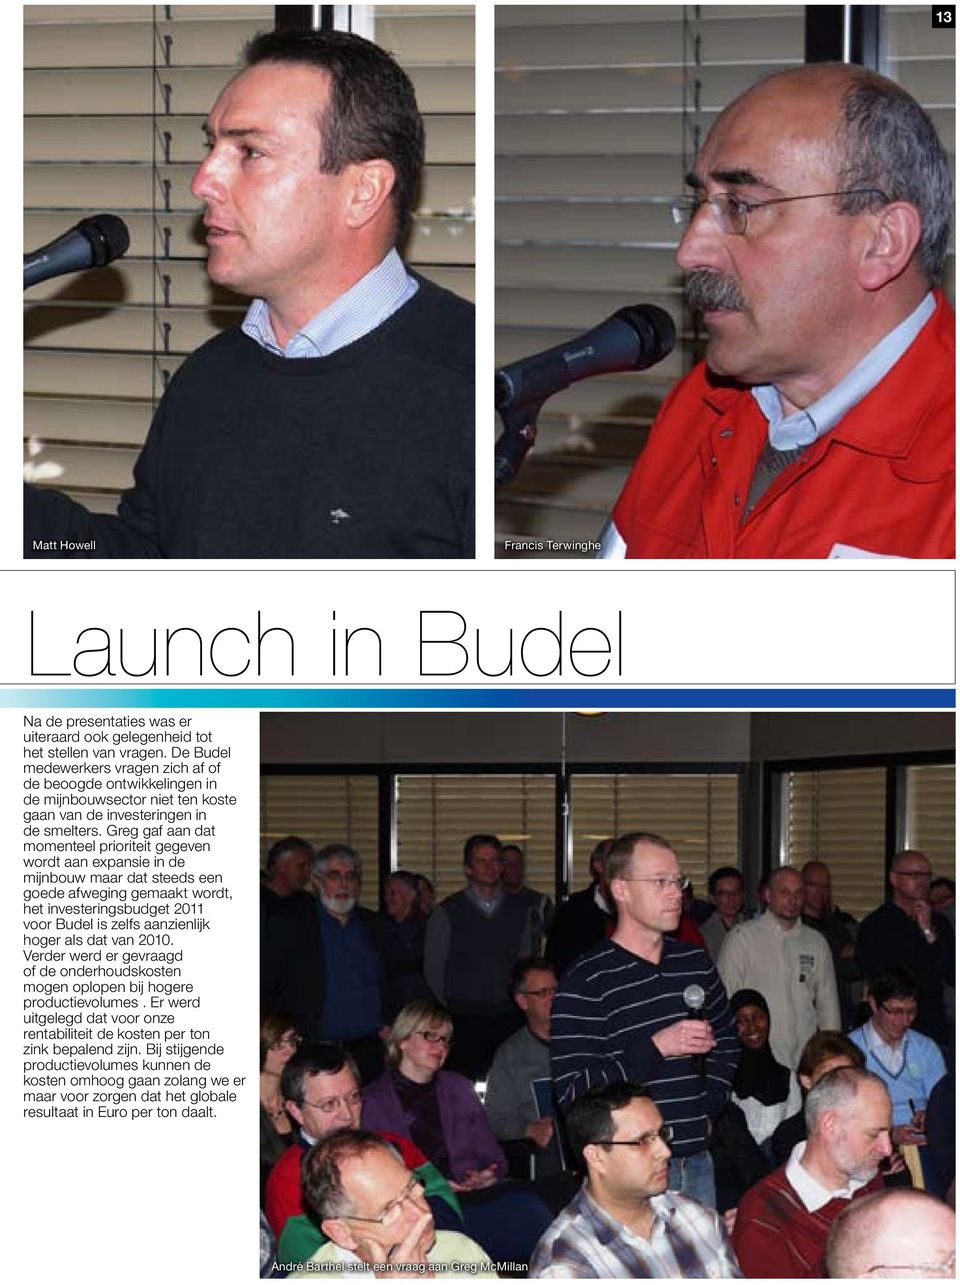 Greg gaf aan dat momenteel prioriteit gegeven wordt aan expansie in de mijnbouw maar dat steeds een goede afweging gemaakt wordt, het investeringsbudget 2011 voor Budel is zelfs aanzienlijk hoger als